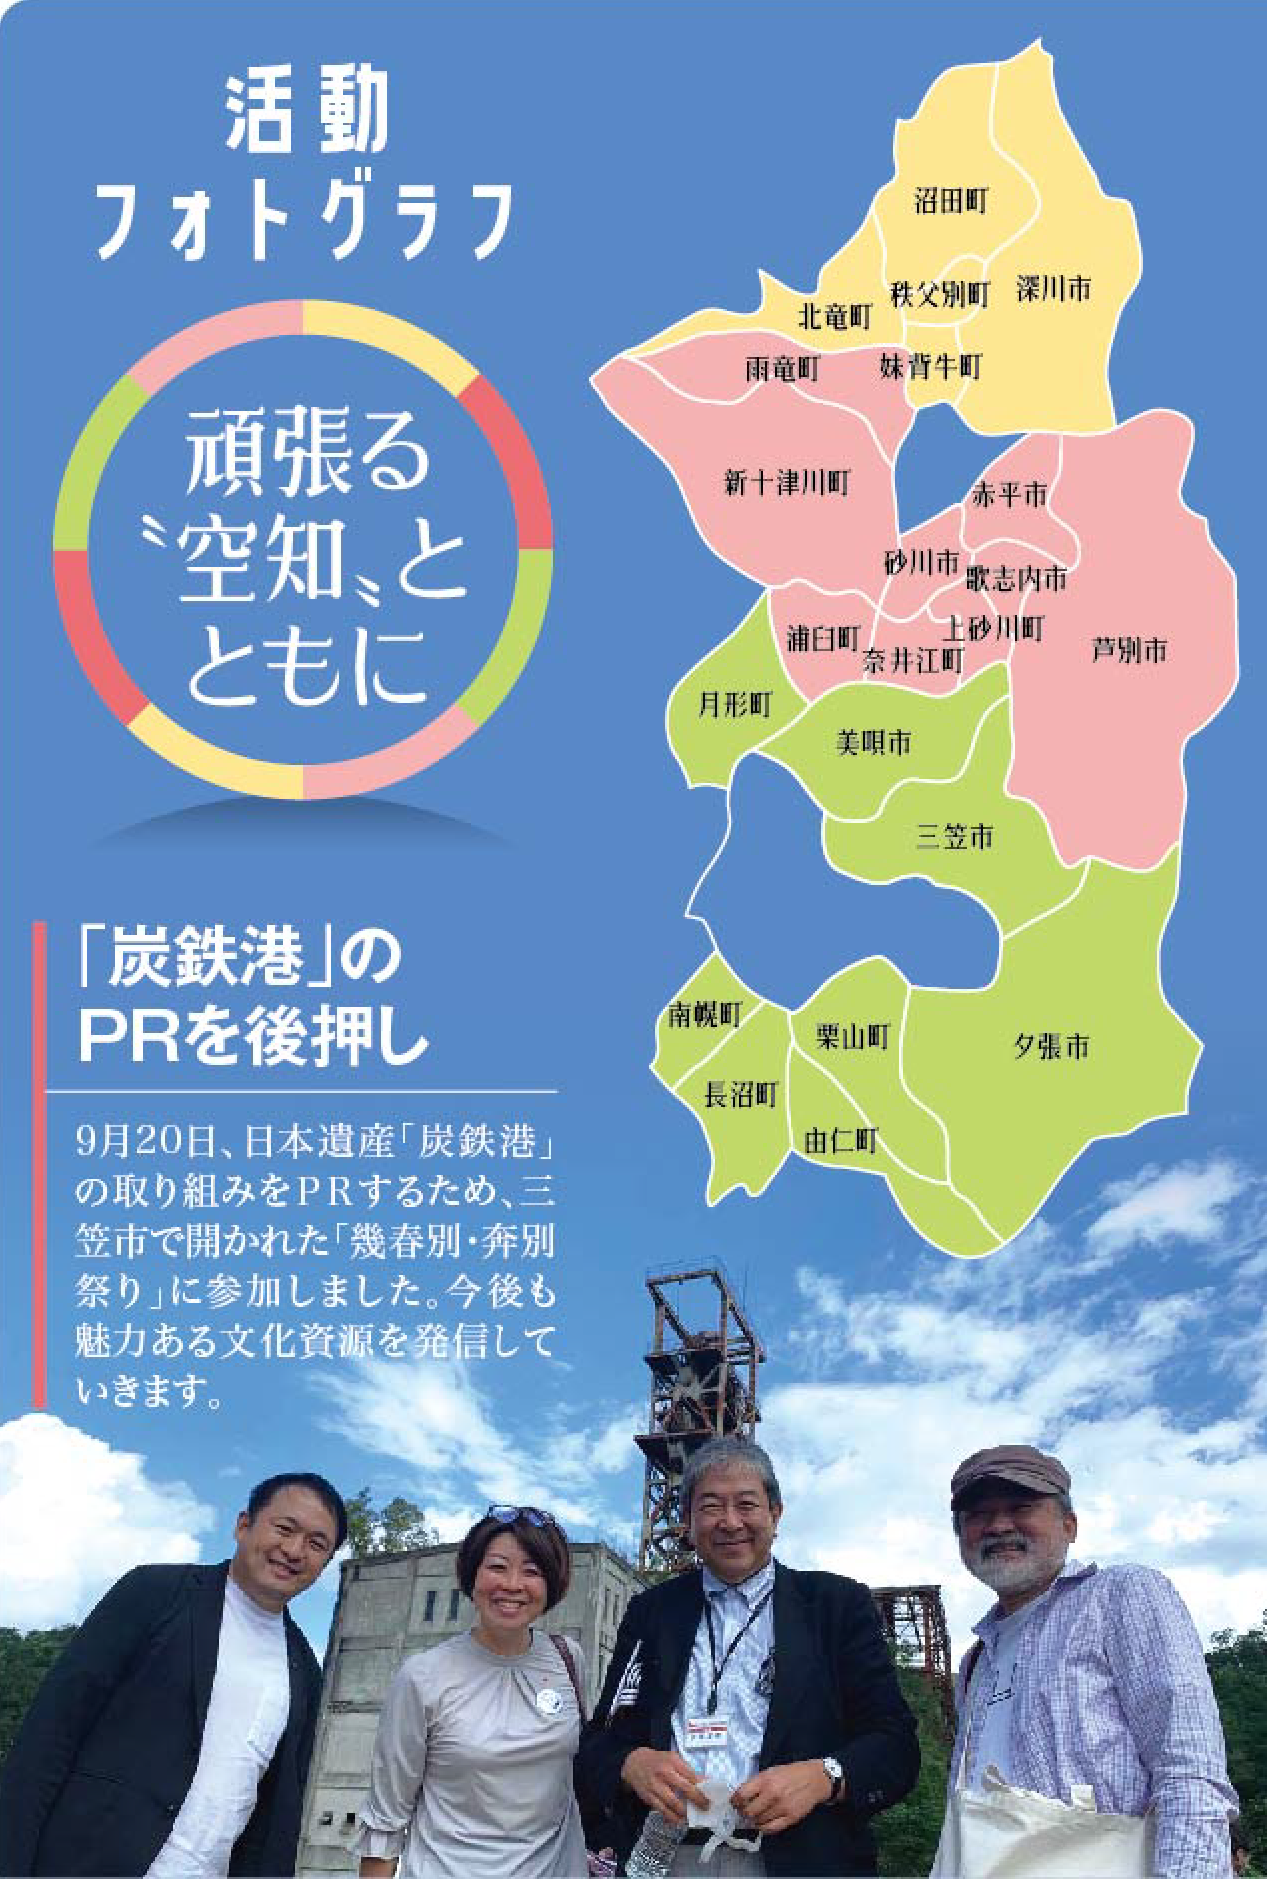 活動フォトグラフ　がんばる「空知」とともに　「炭鉄港」のPRを後押し　9月20日、日本遺産「炭鉄港」の取り組みをPRするため、三笠市で開かれた「幾春別・奔別祭り」に参加しました。今後も魅力ある文化資源を発信していきます。